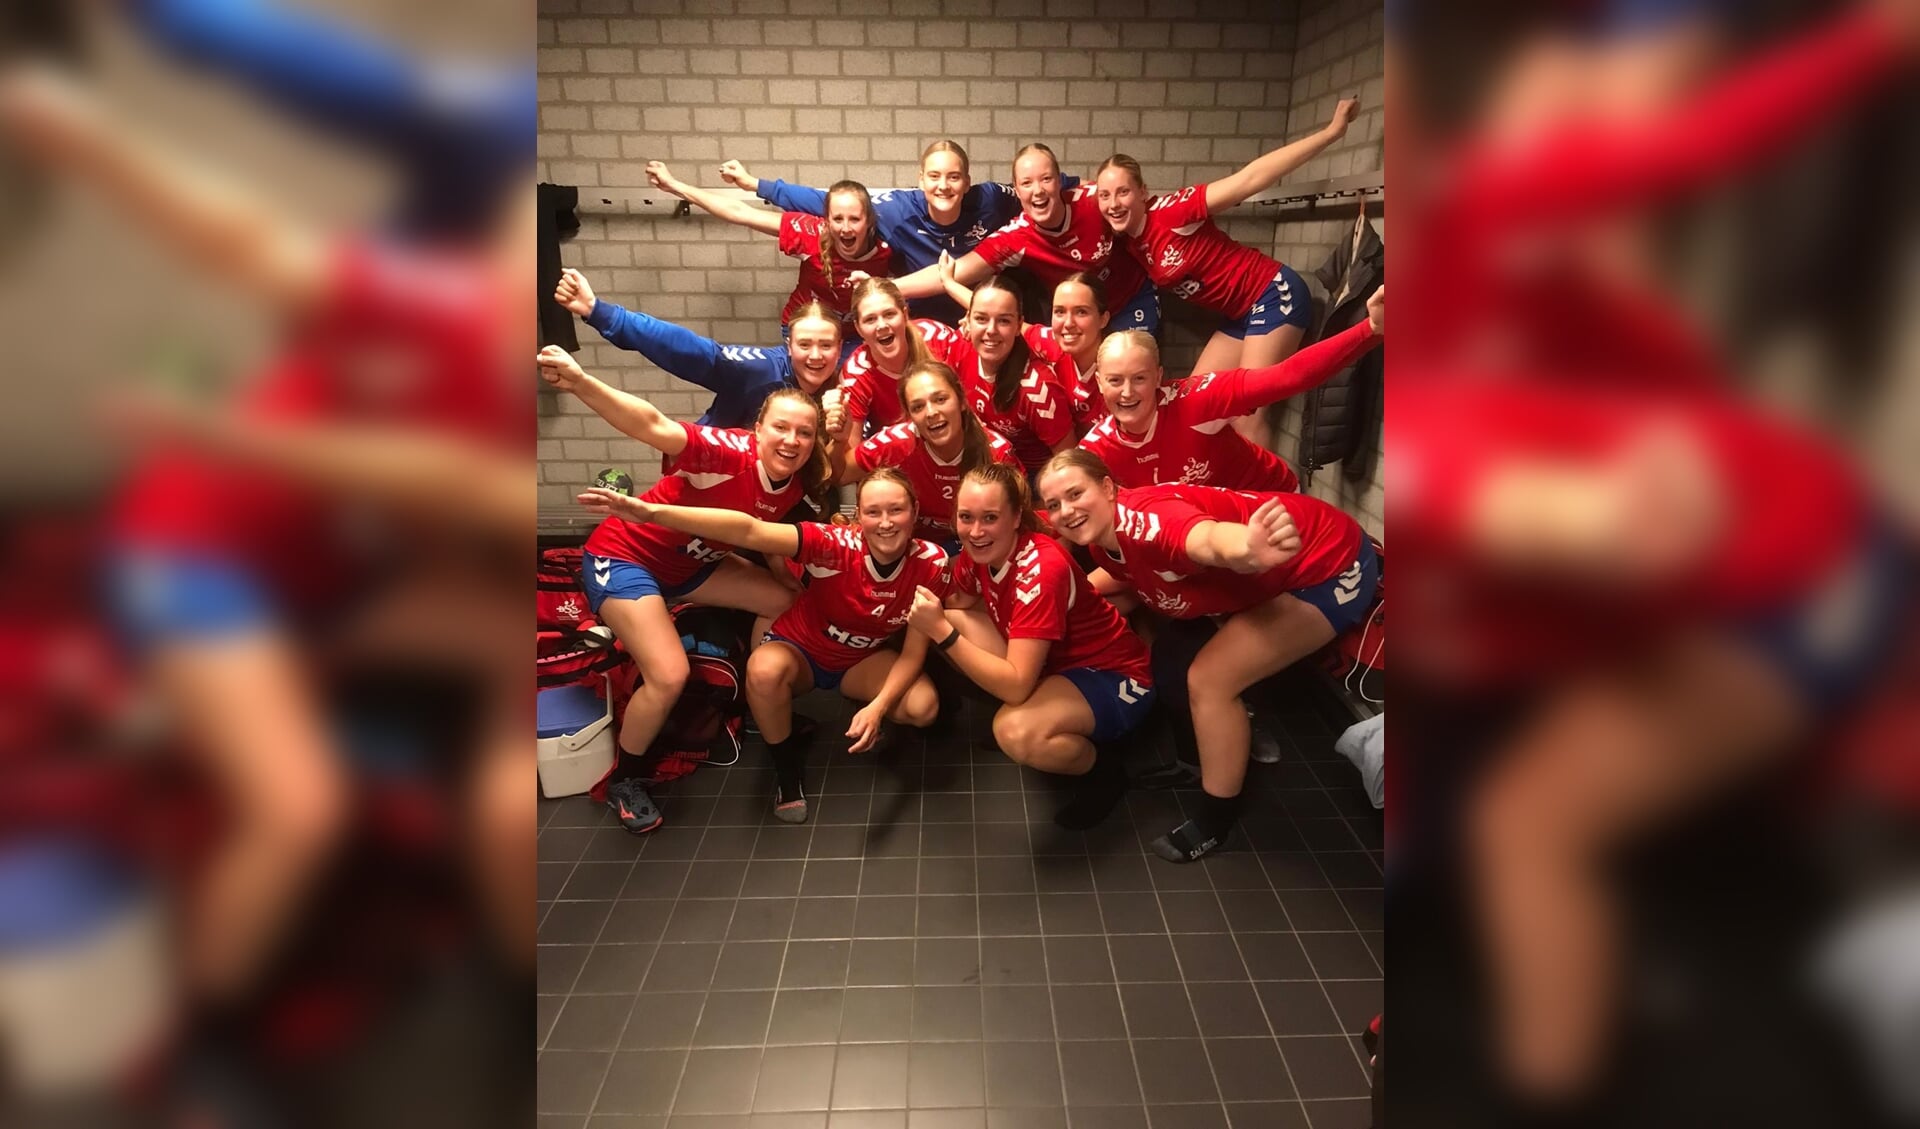 Blijdschap bij de handbalvrouwen van DSS Heemskerk na afloop. 